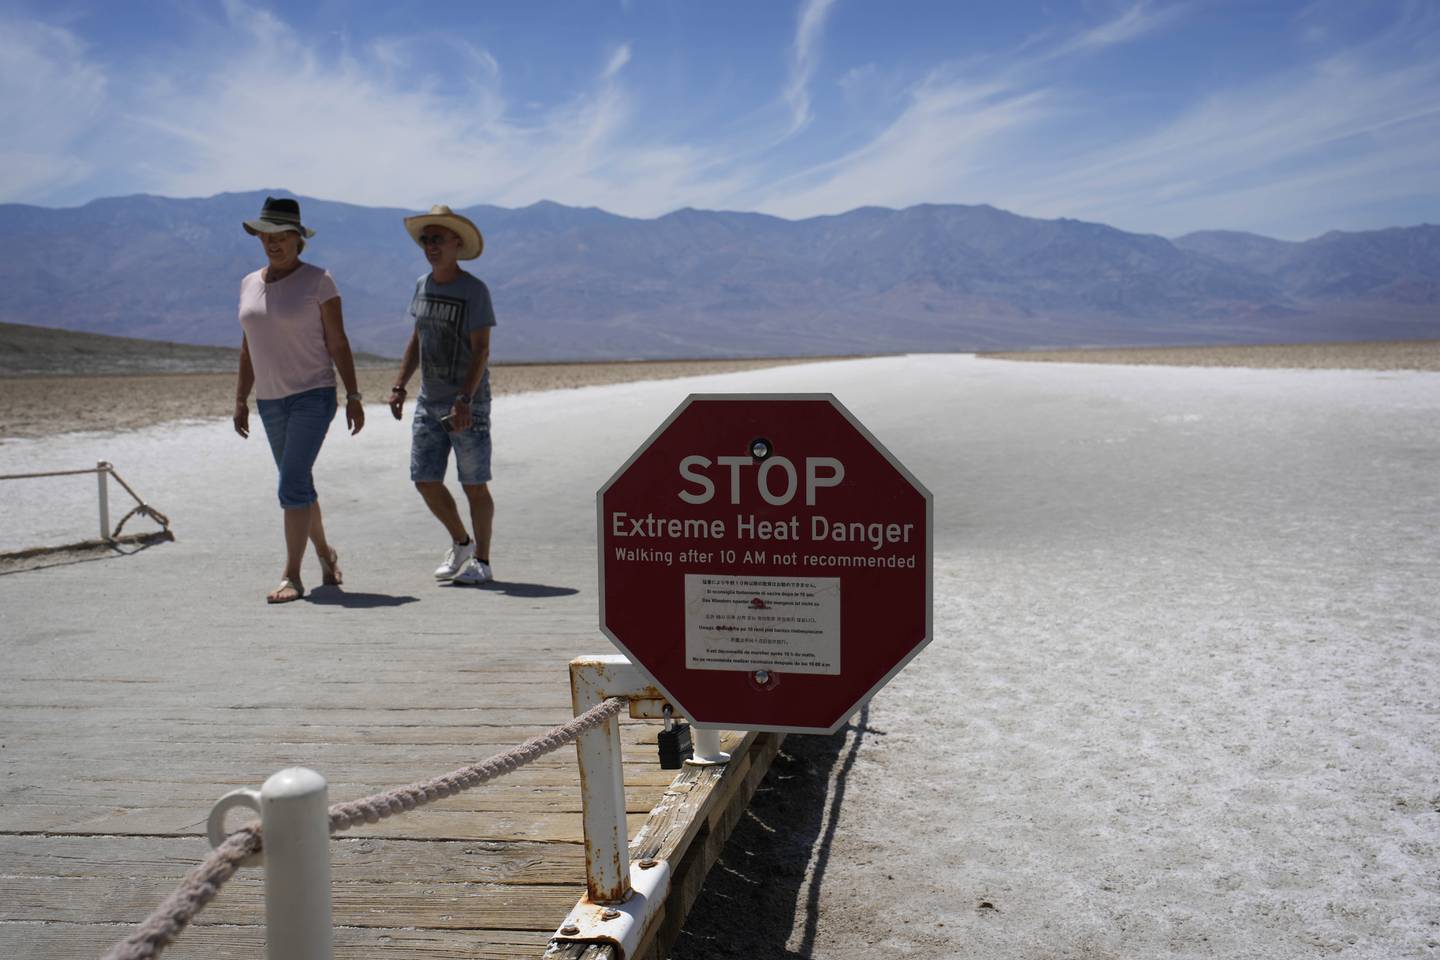 To personer ute i ørkenen med solhatter på. Foran dem er et stopskilt hvor det står "extreme heat danger".